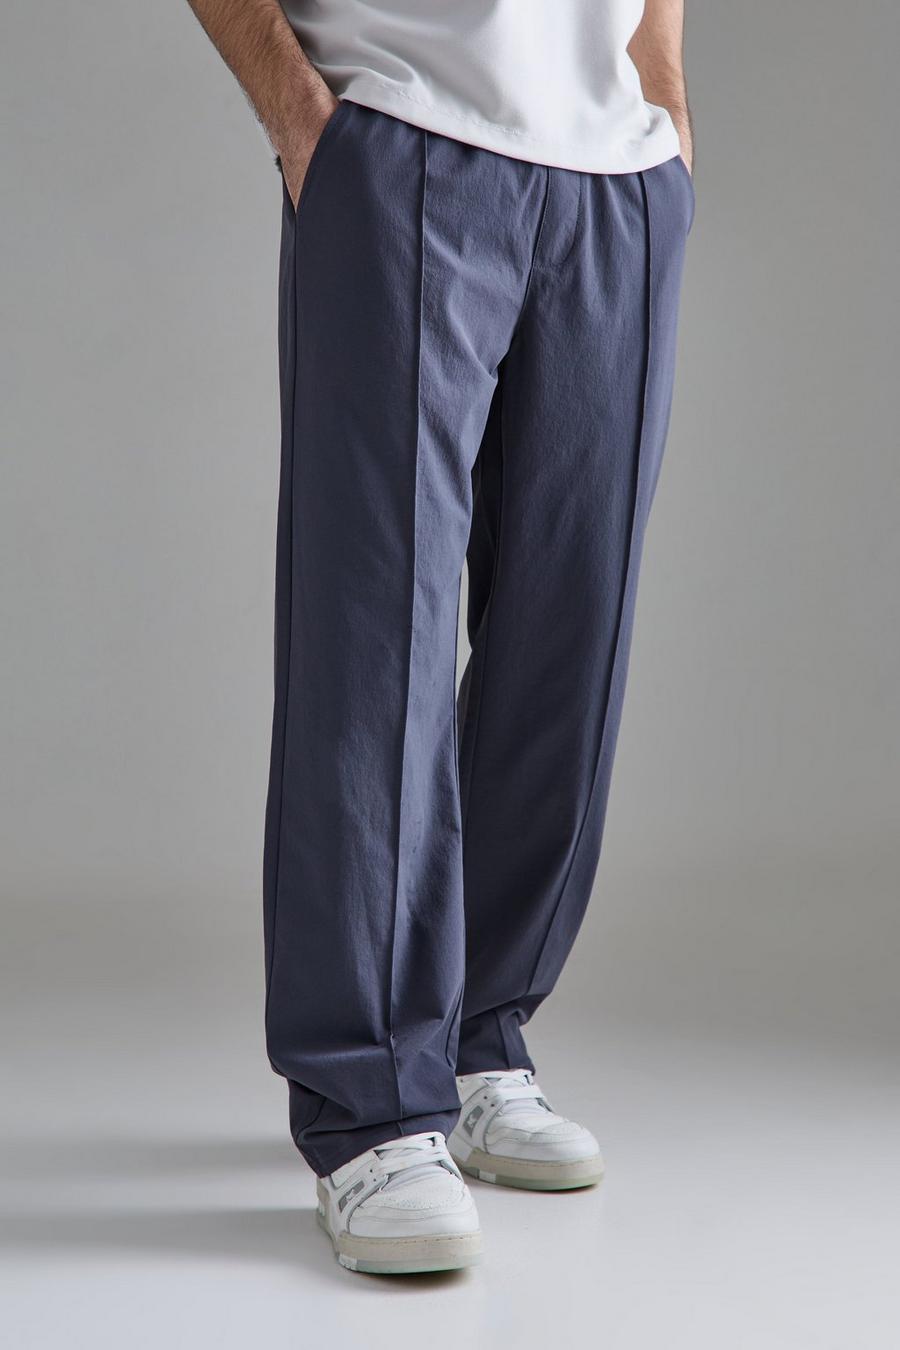 Pantalón técnico elástico ligero holgado con alforza, Slate blue